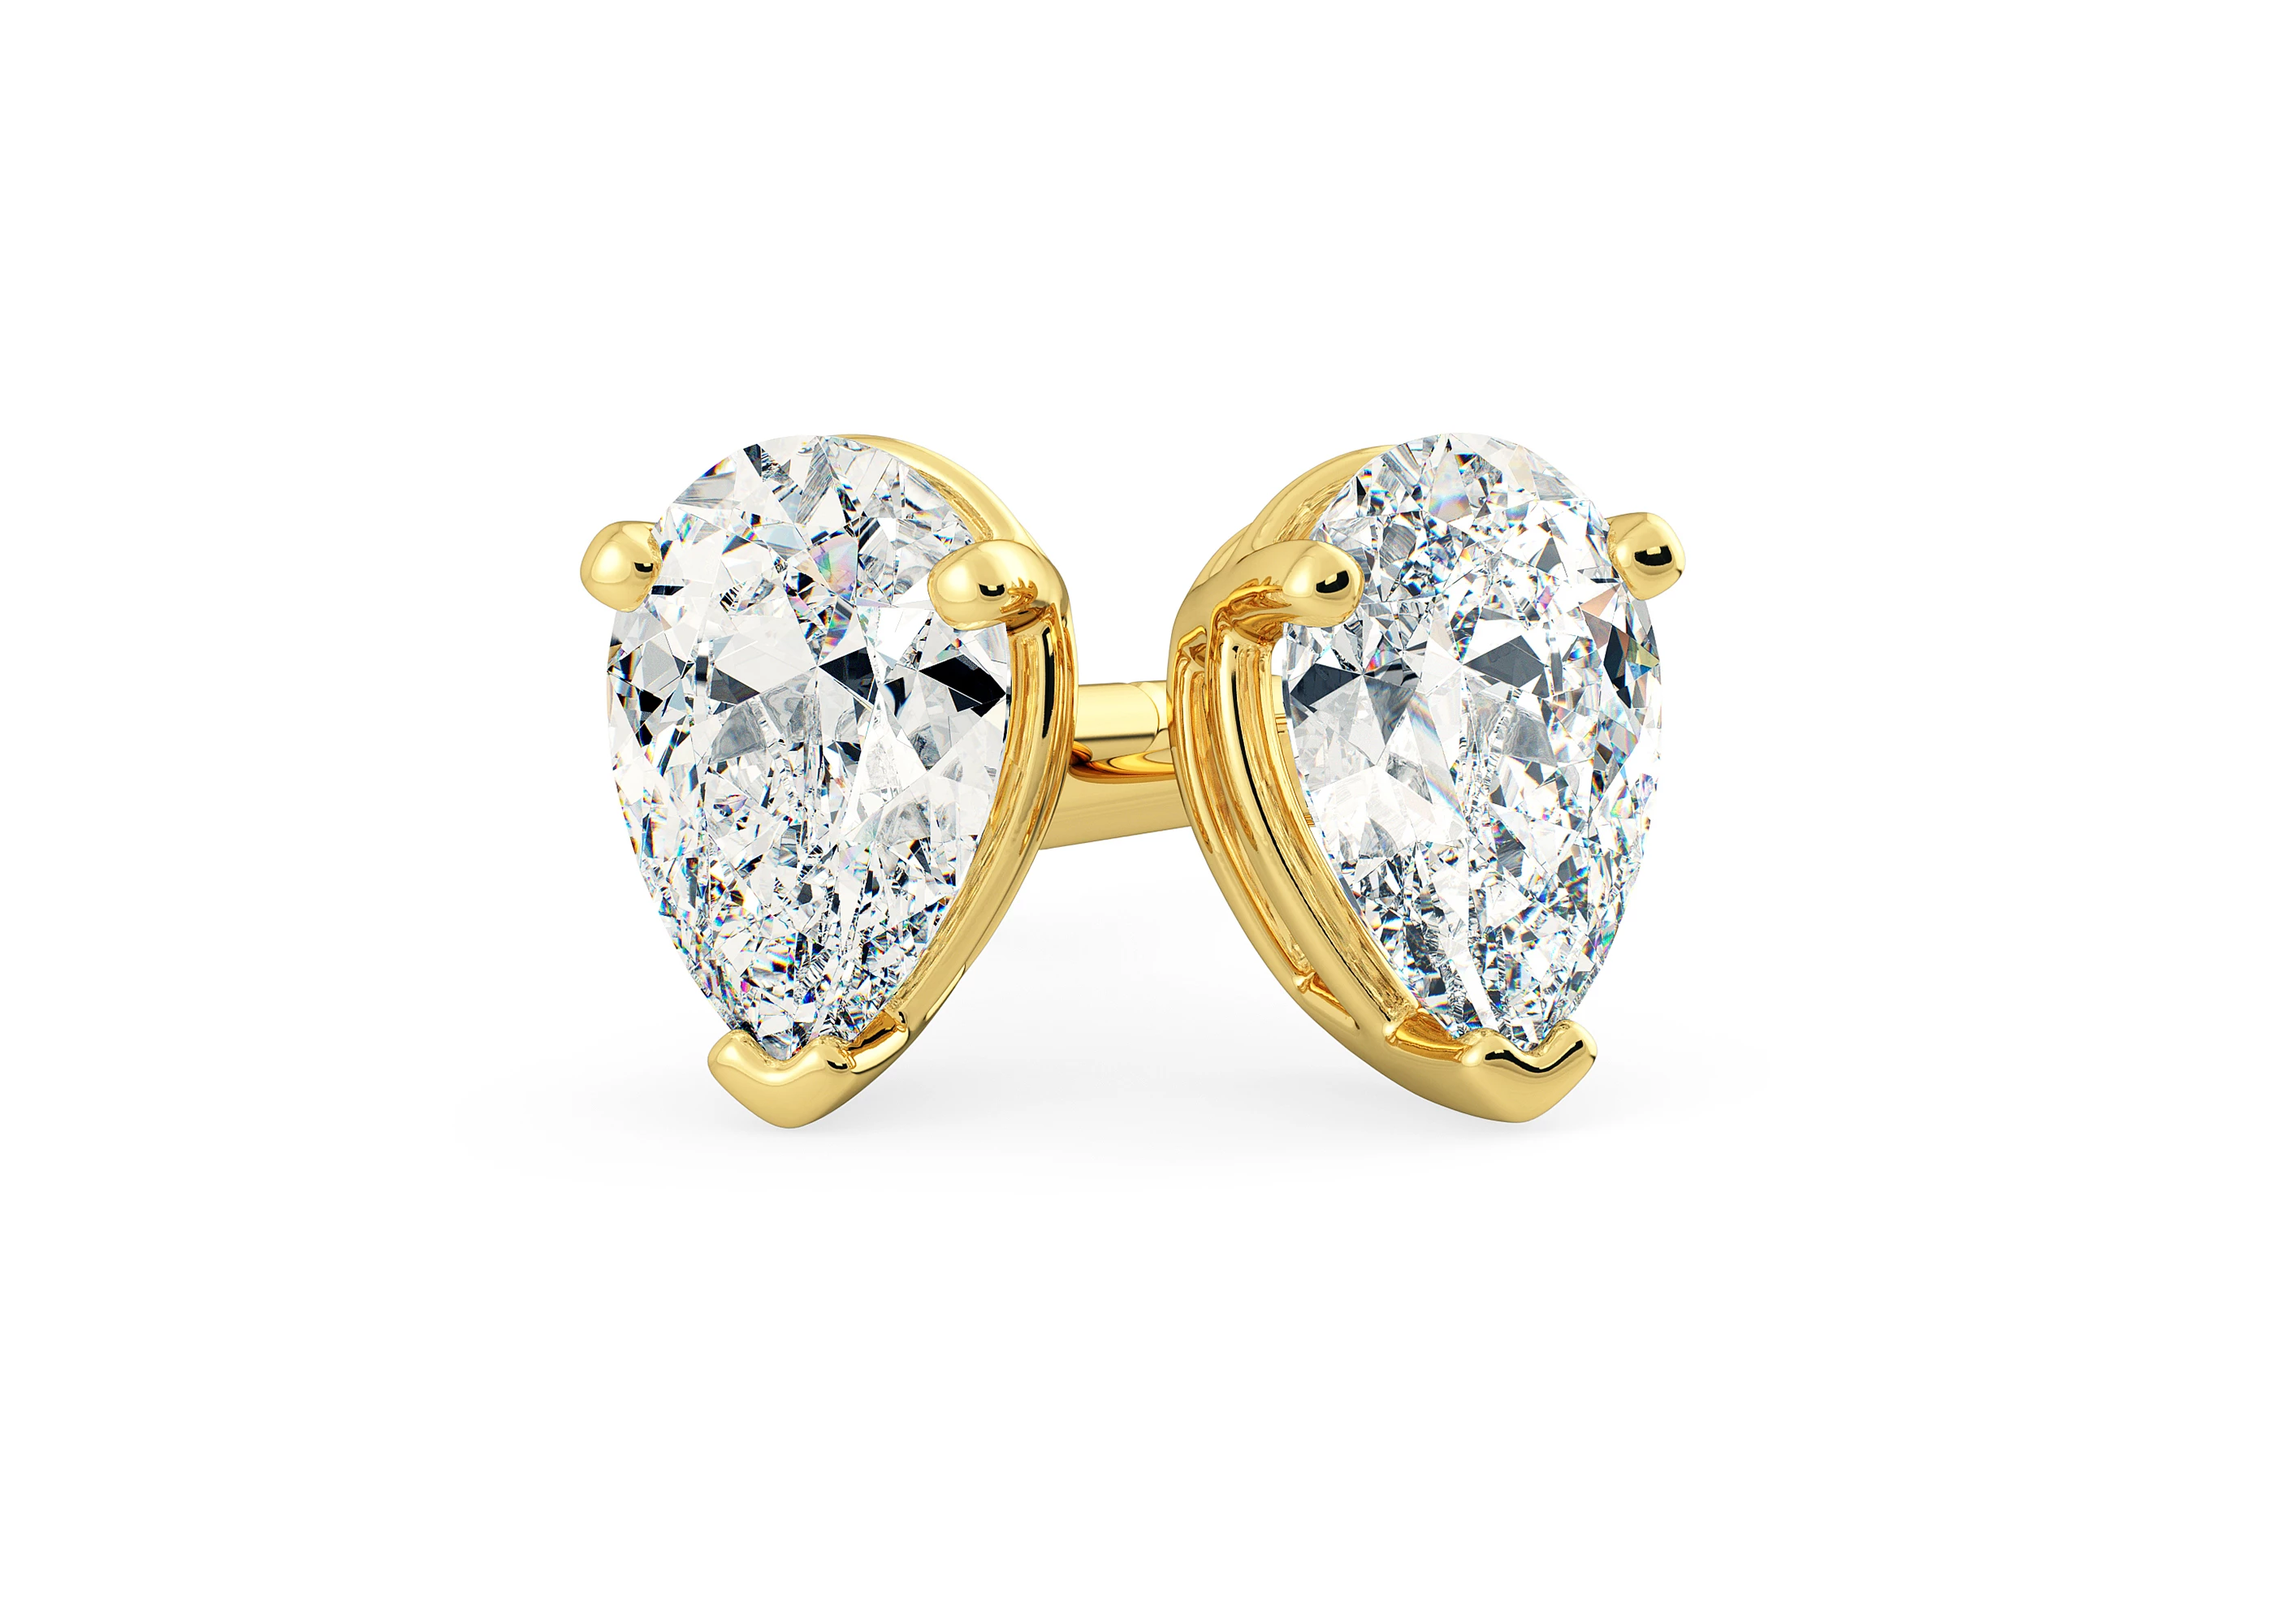 Ettore Pear Diamond Stud Earrings in 18K Yellow Gold with Butterfly Backs